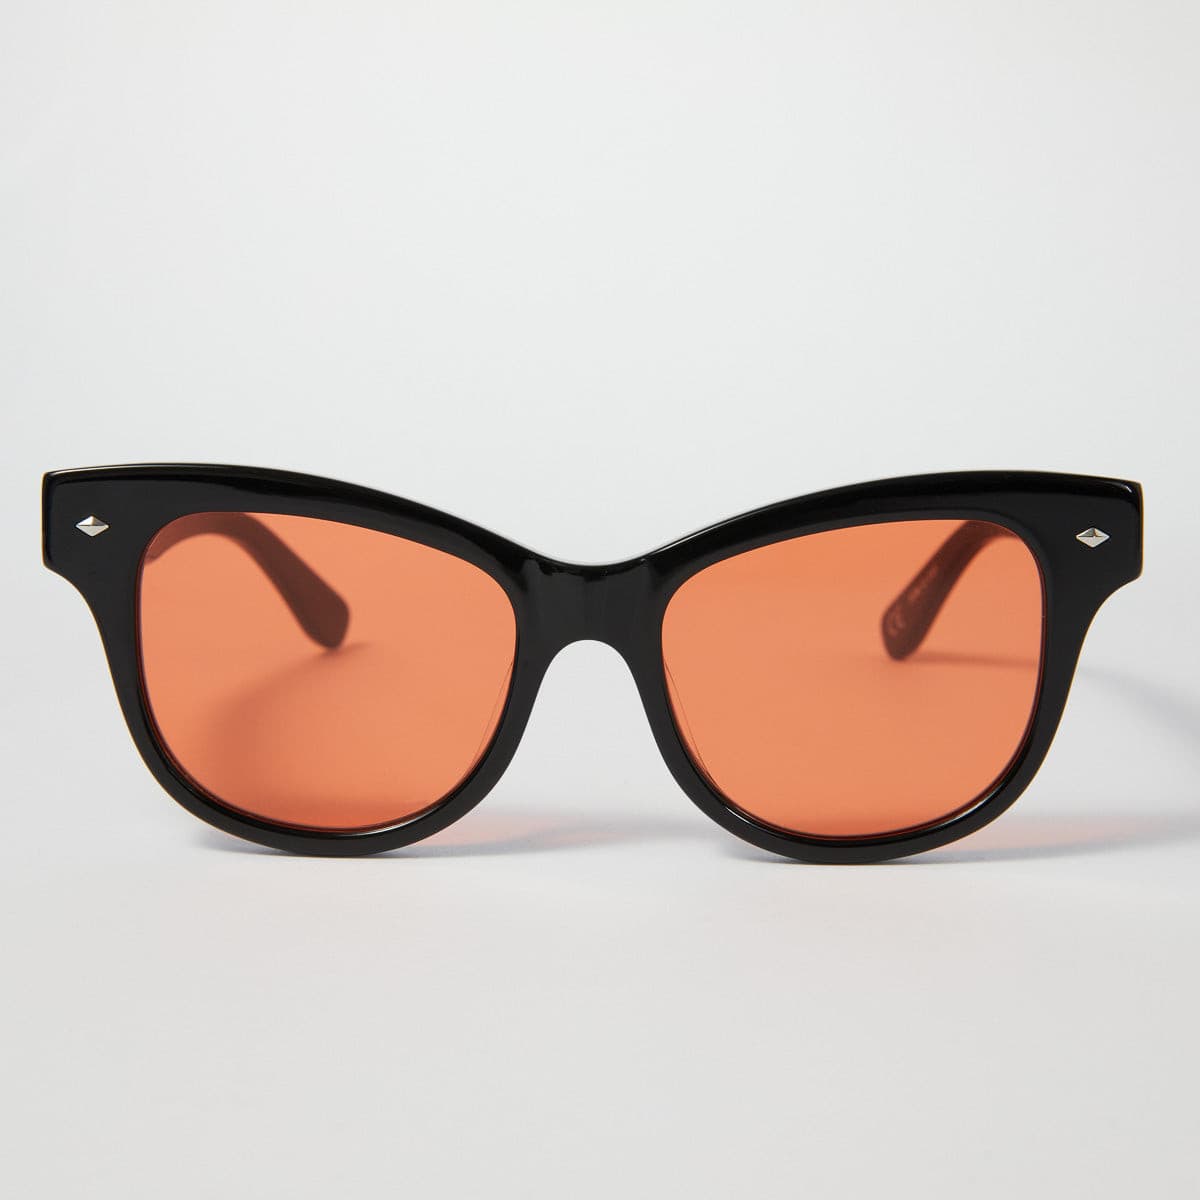 HELIX - Black Polished Frames / Orange Lens ŁEOIDE